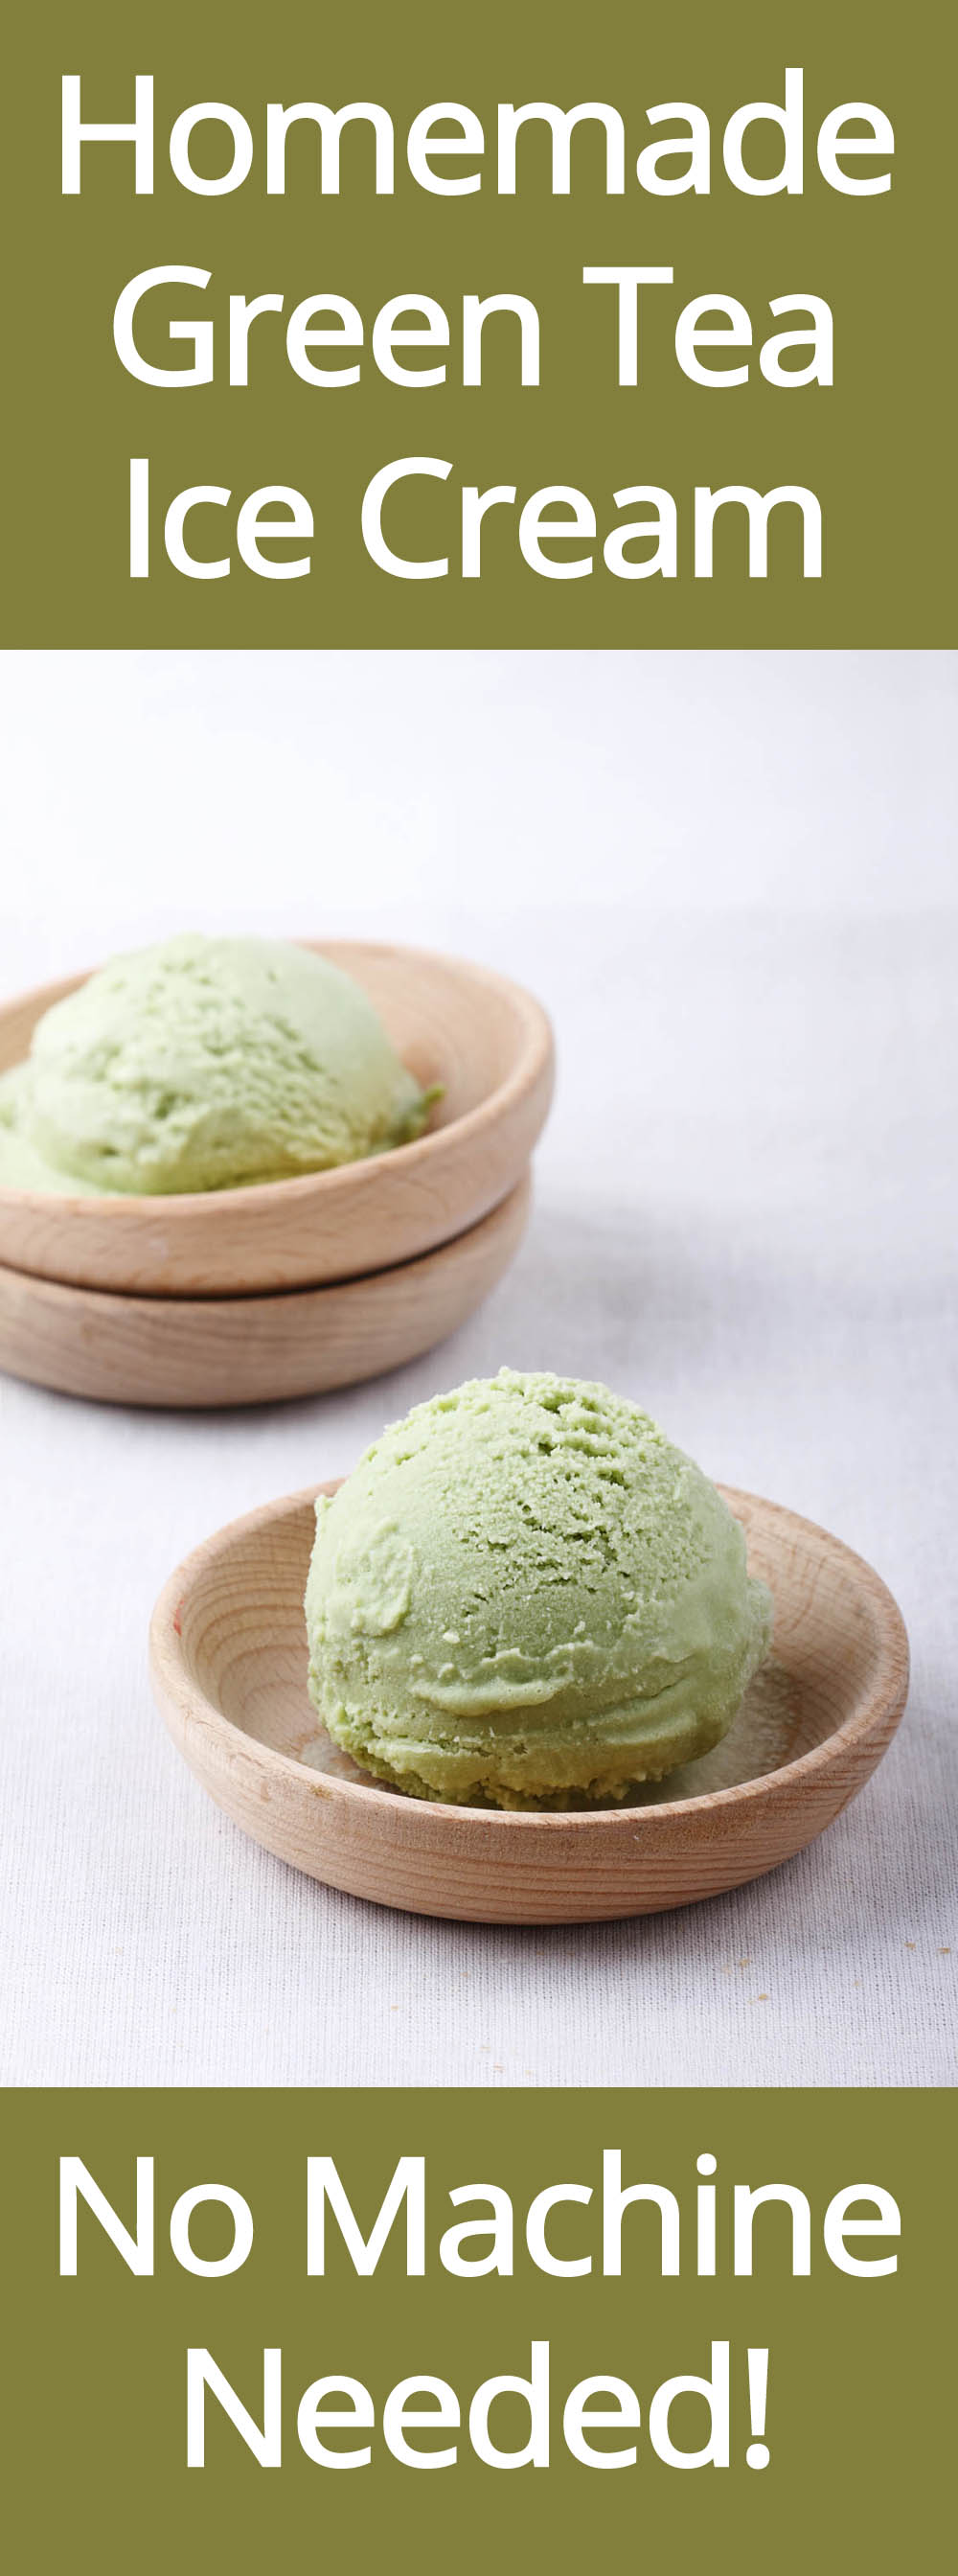 Homemade Green Tea (Matcha) Ice Cream - No Machine Needed!